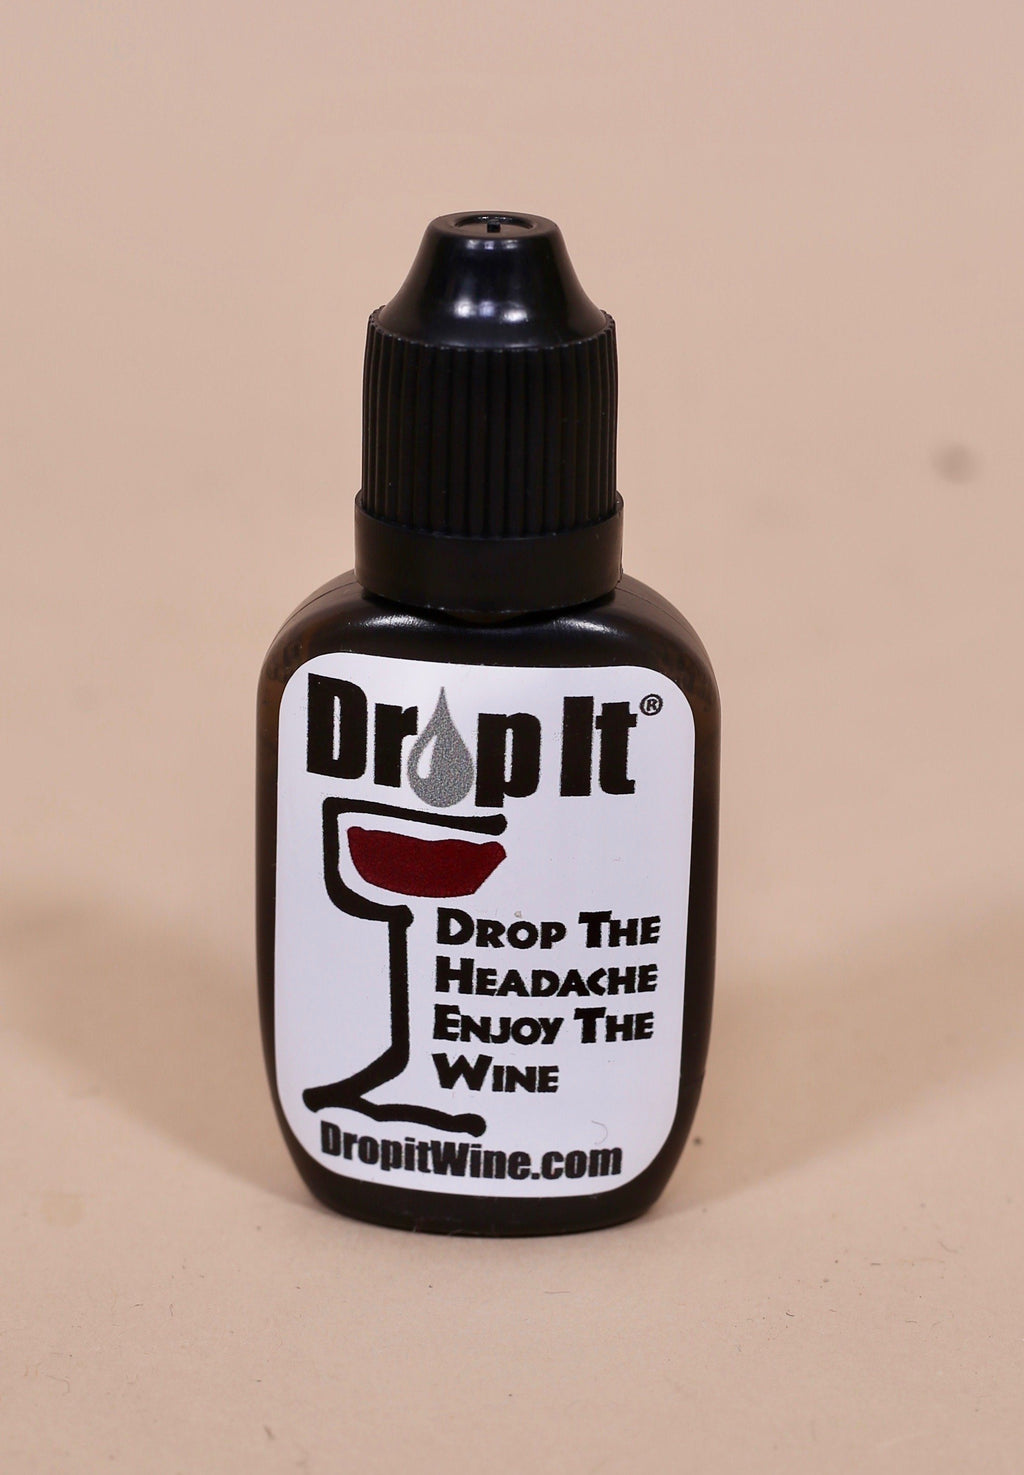 http://shopcarolinehill.com/cdn/shop/products/drop-it-wine-drops-carolinehill-458768.jpg?v=1669994199&width=1024